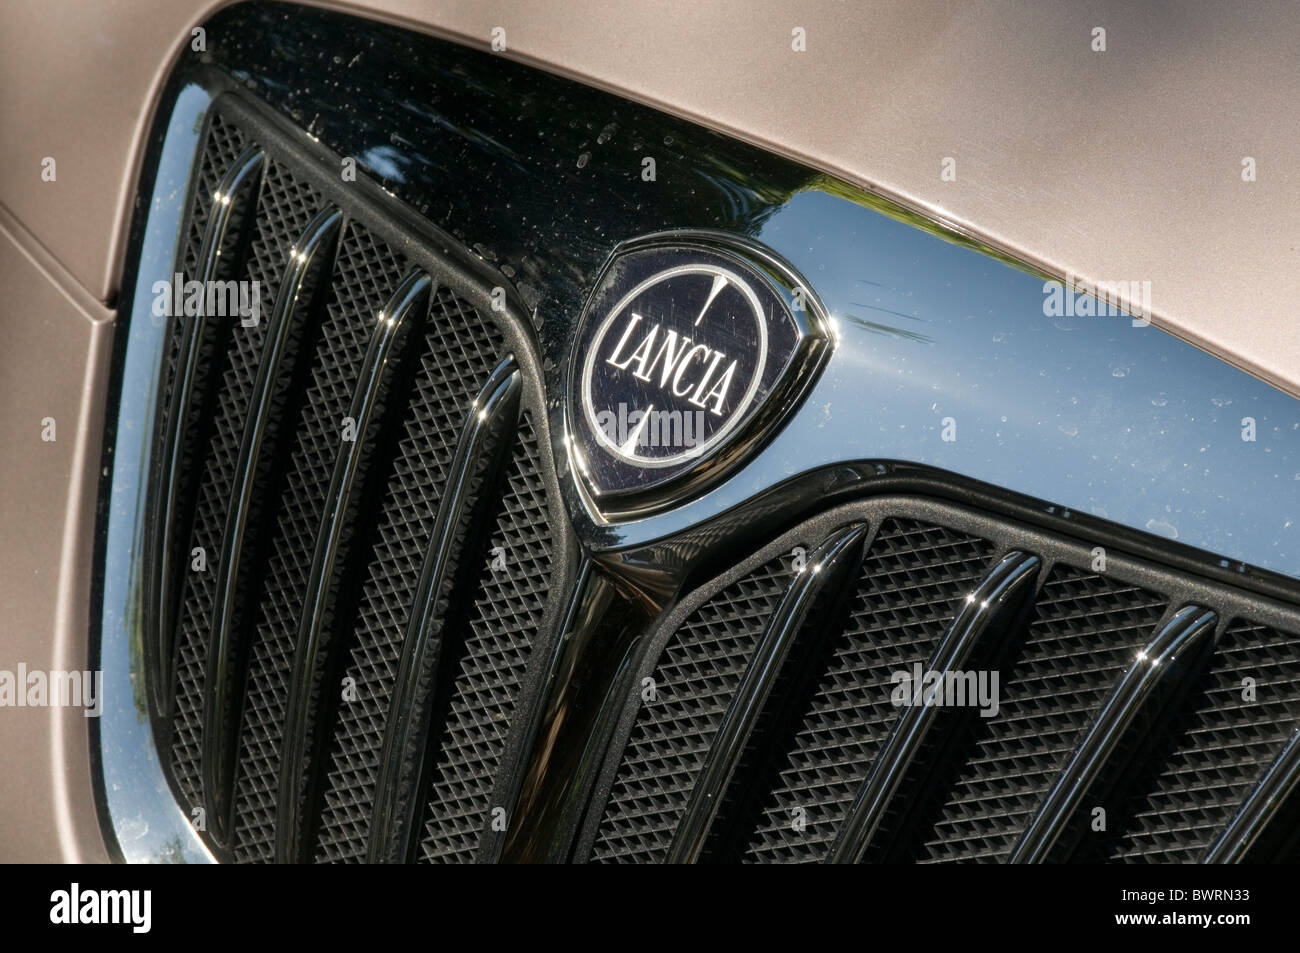 Lancia voiture voitures insignes insignes logos logo hood bonnet grill italien de marque marques marque italie luxe gm General motors faire mak Banque D'Images